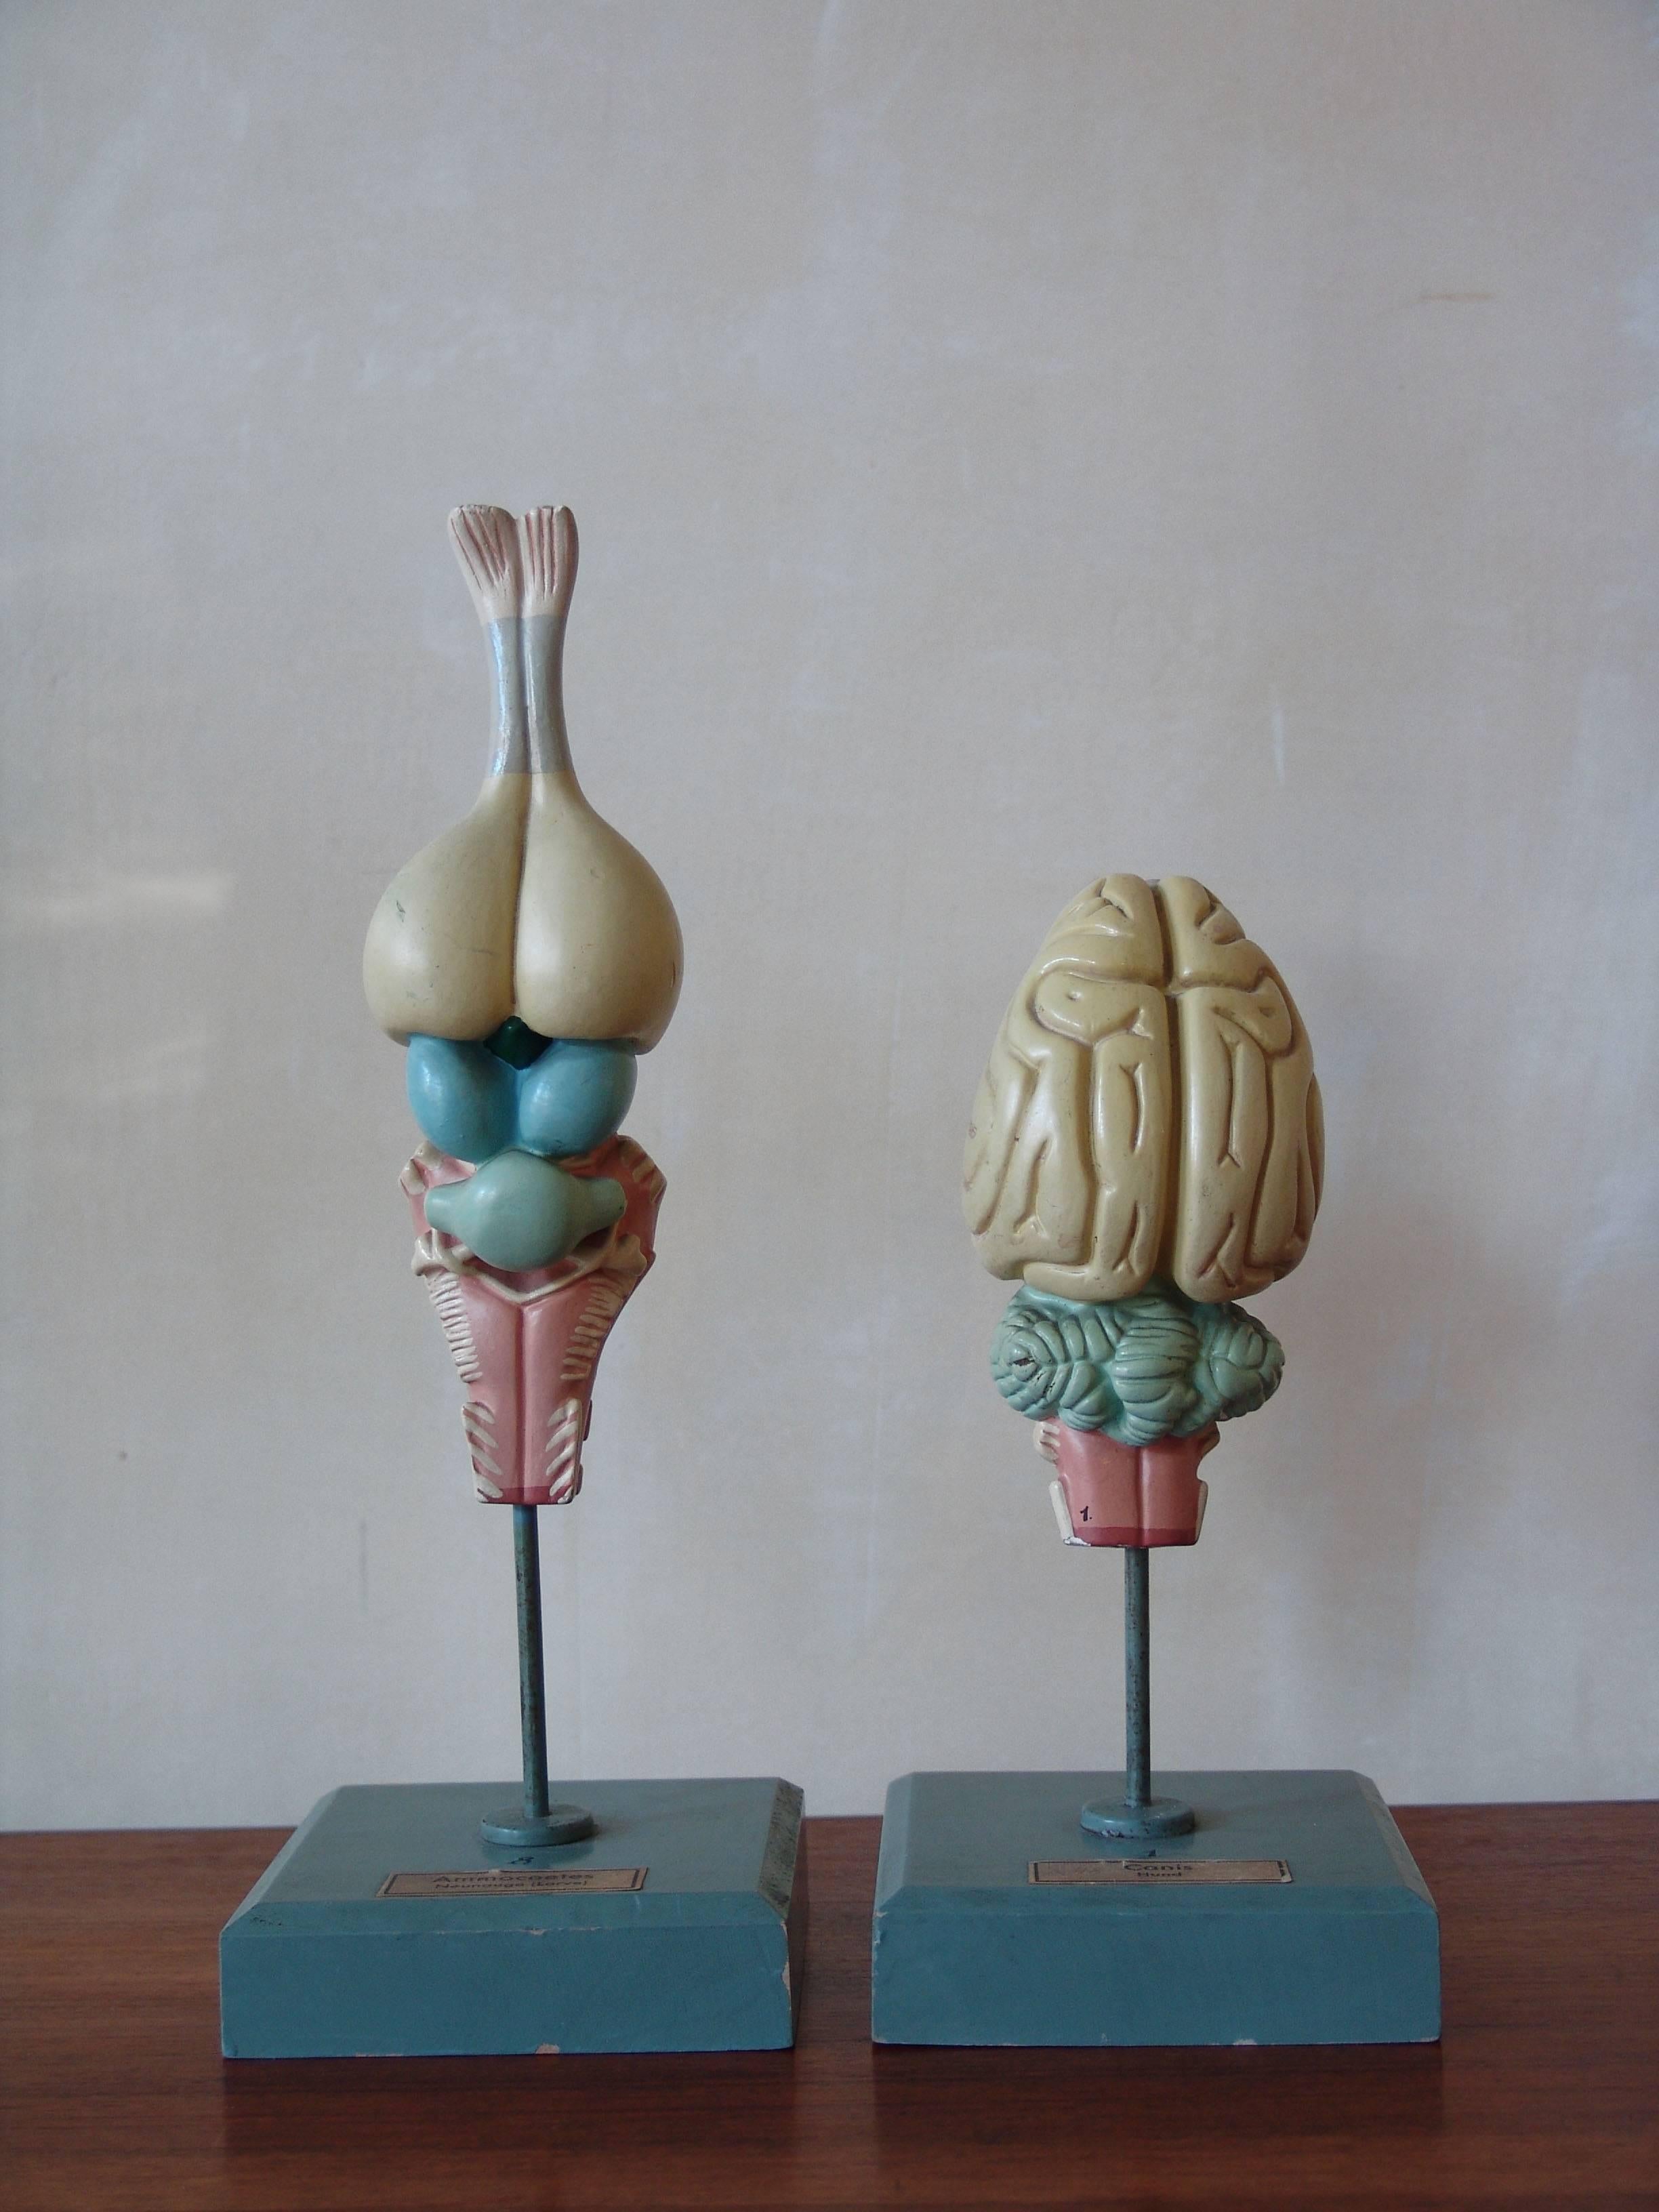 Ensemble de deux étonnants modèles anatomiques universitaires, vers les années 1950.
Mesures à partir de la gauche : hauteur 30 cm, 23 cm.